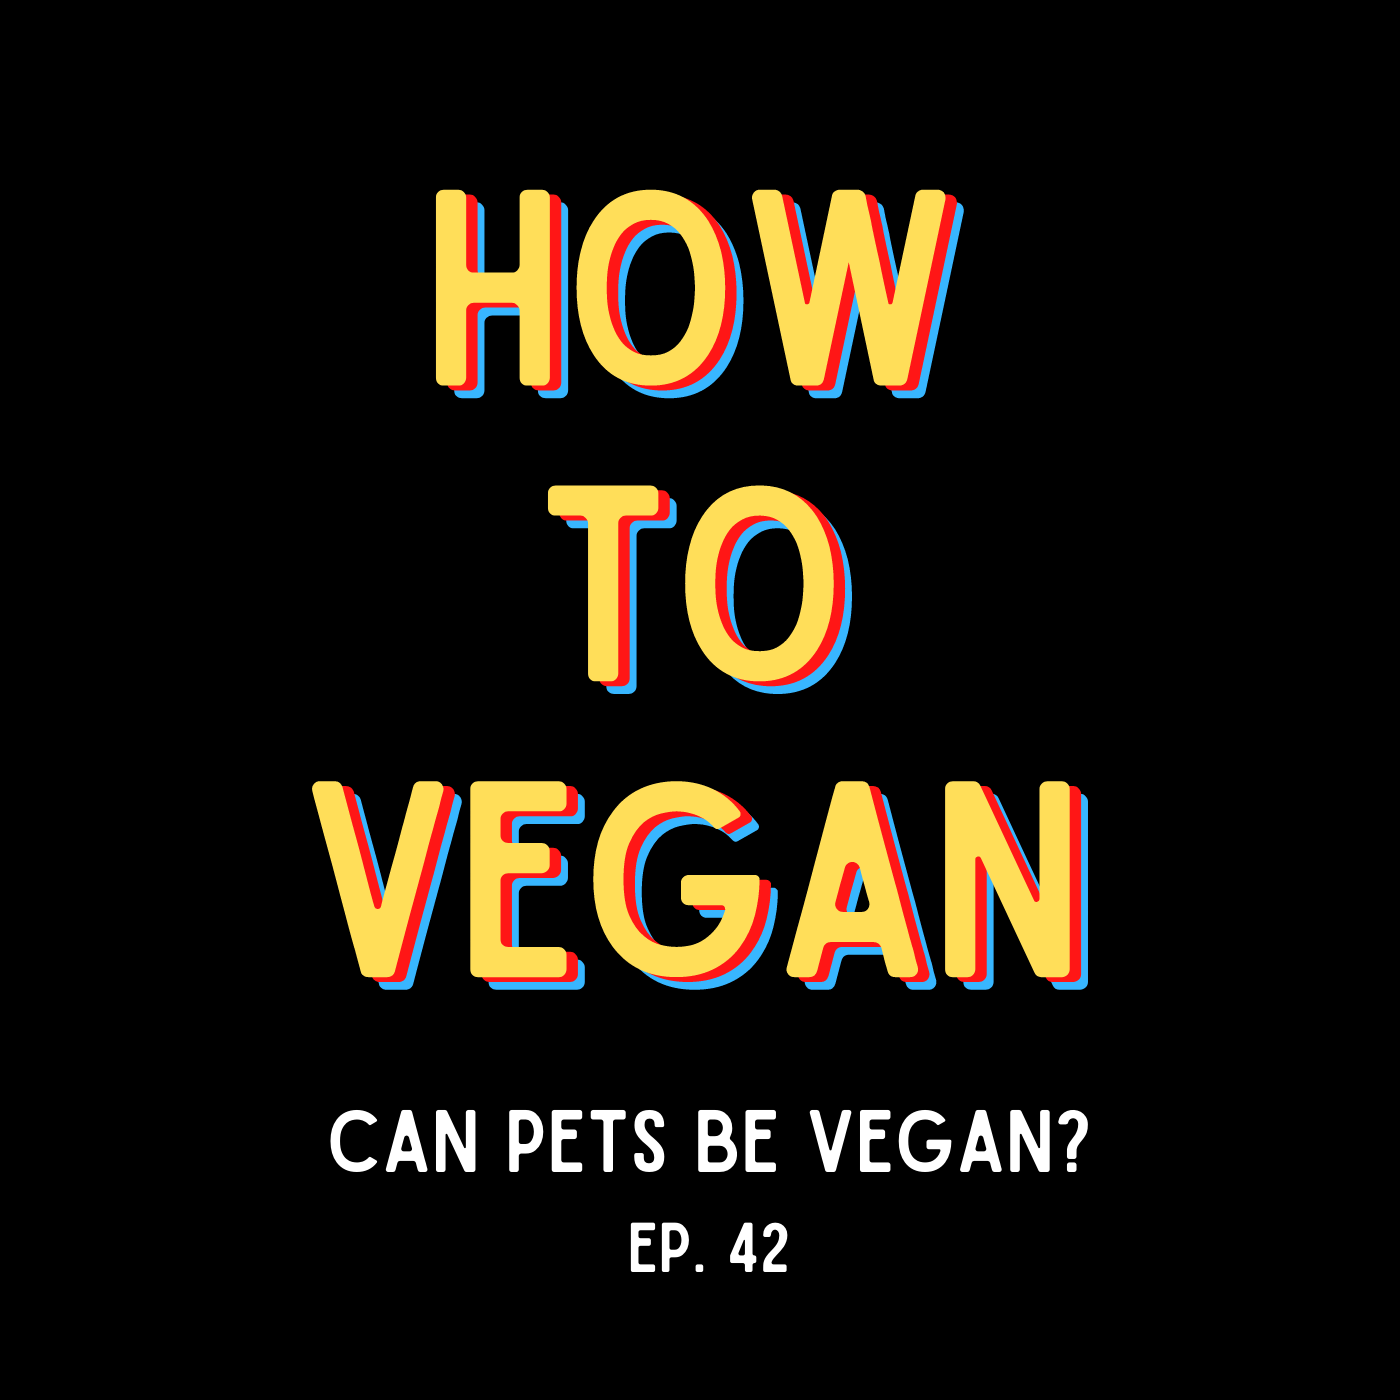 Can Pets Be Vegan?